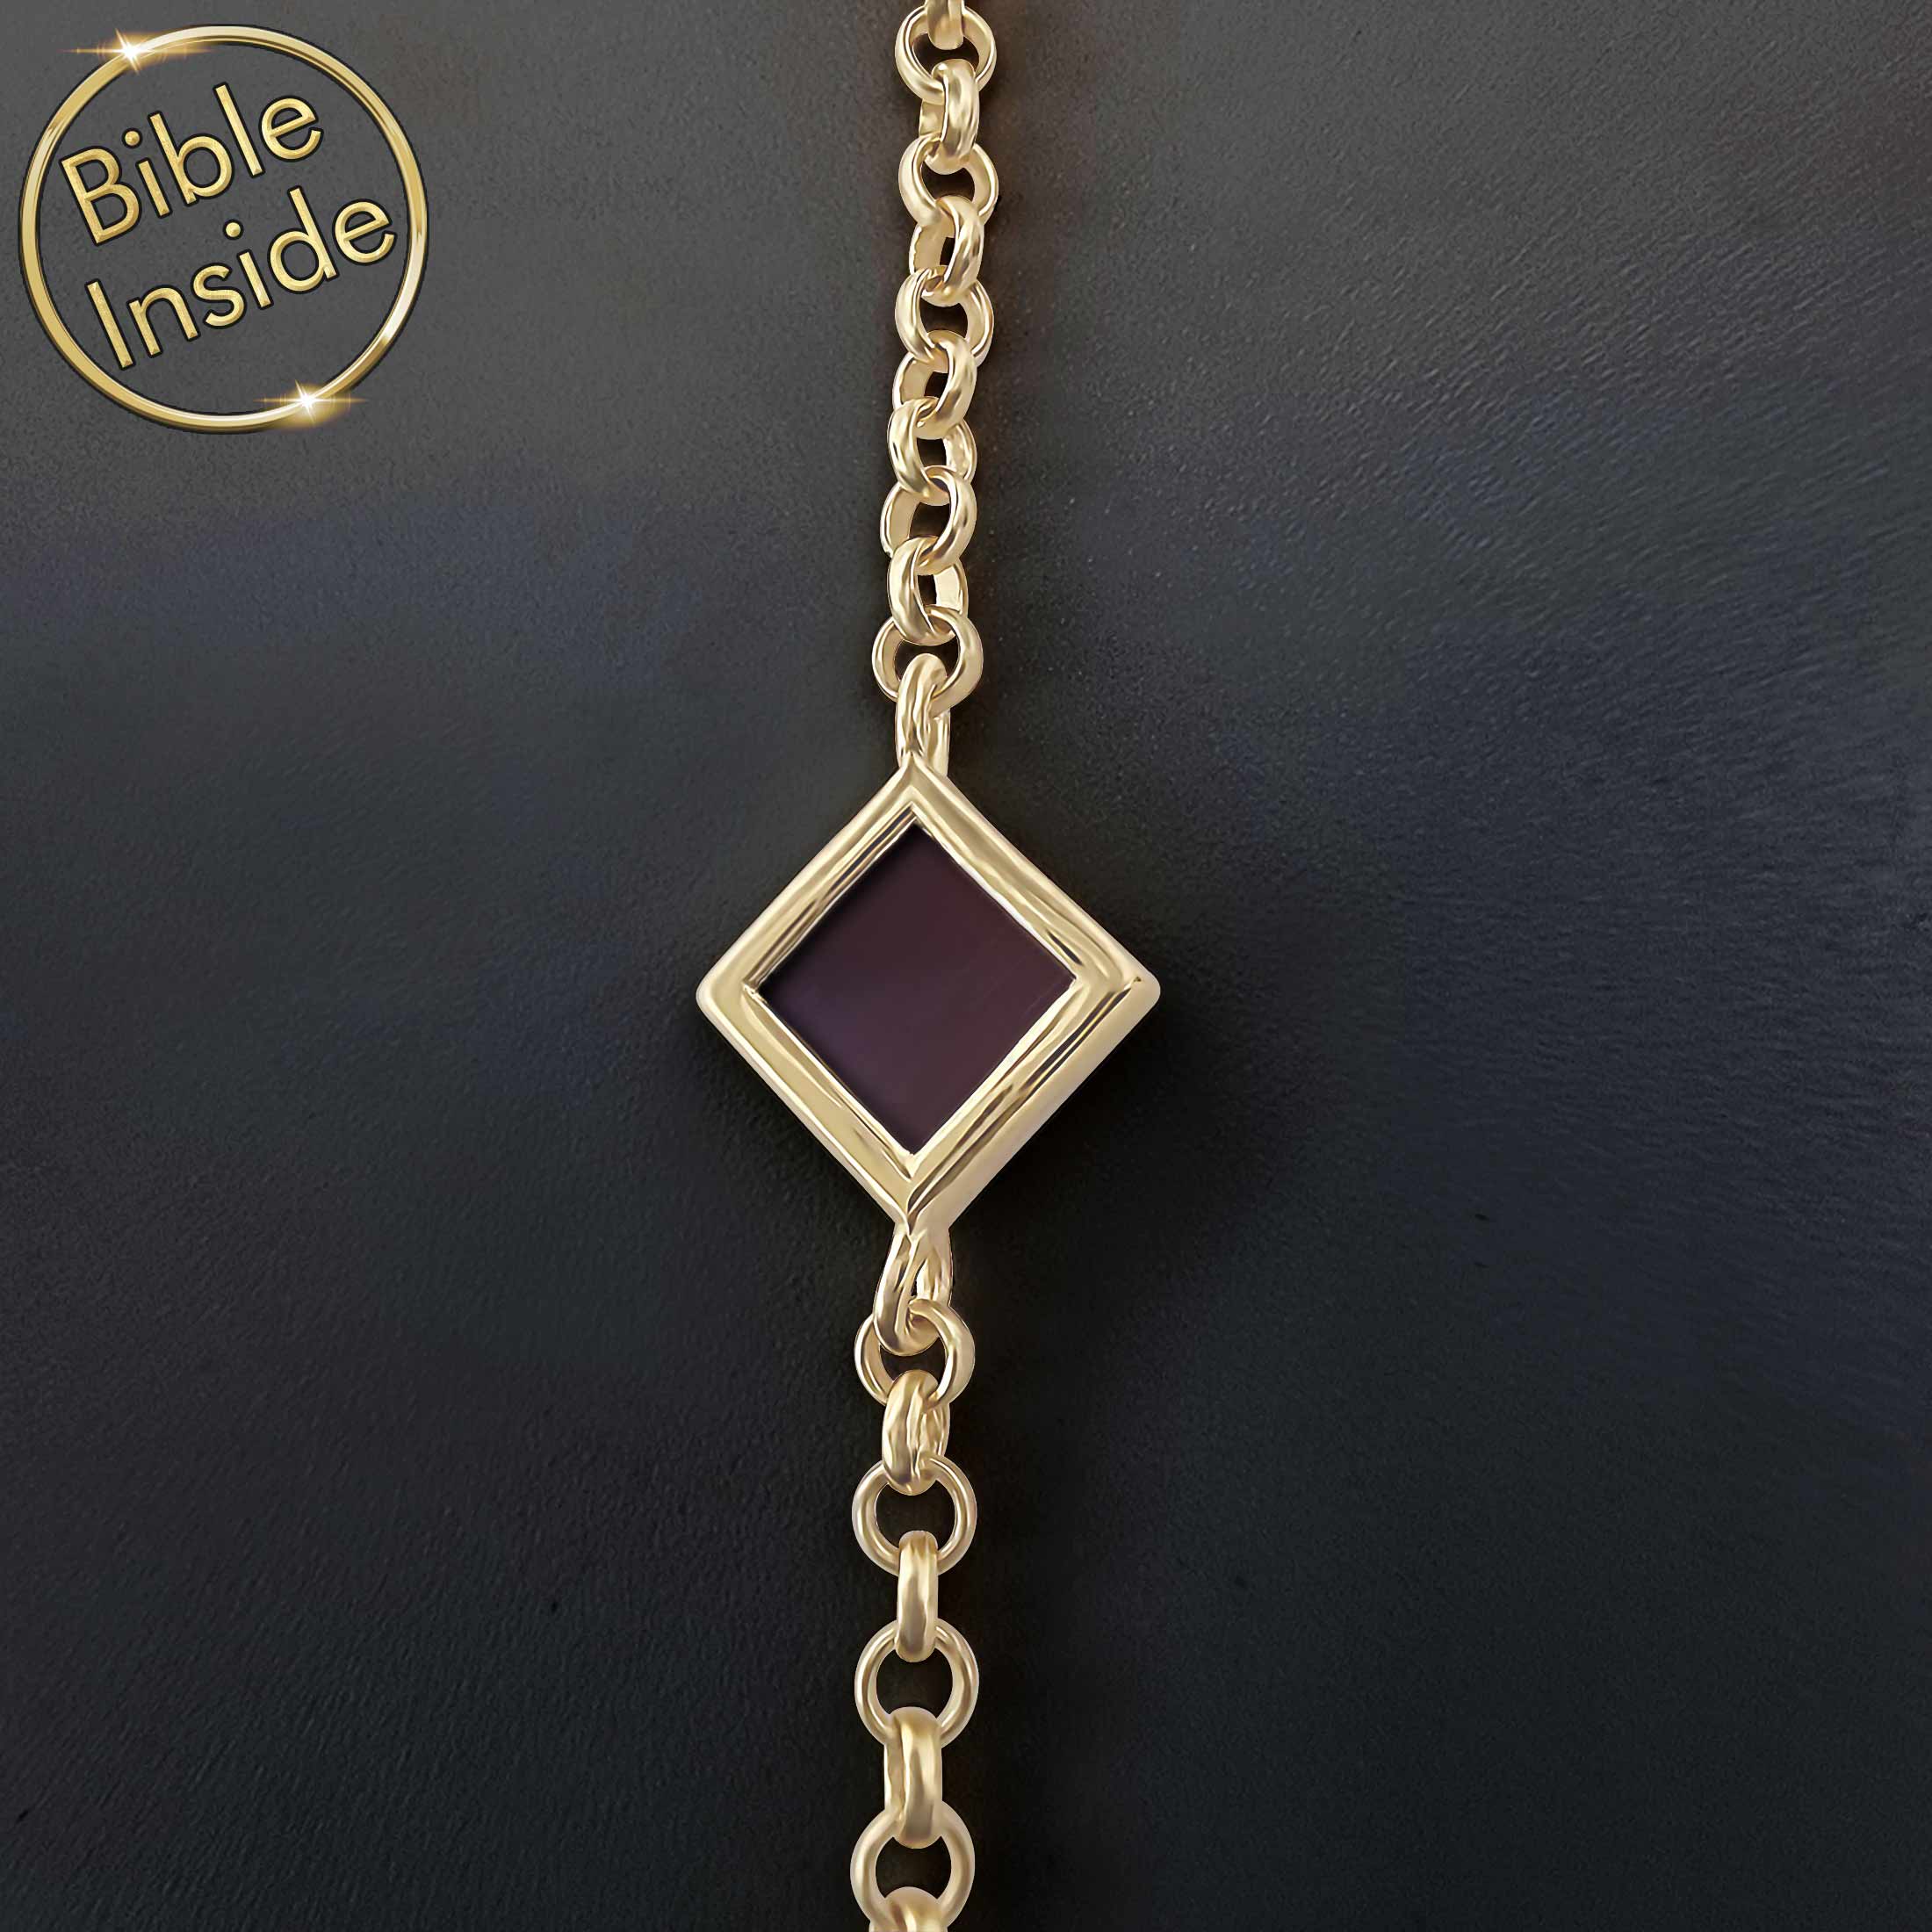 Religious 14K Gold Bracelet With Nano Bible - Nano Jewelry